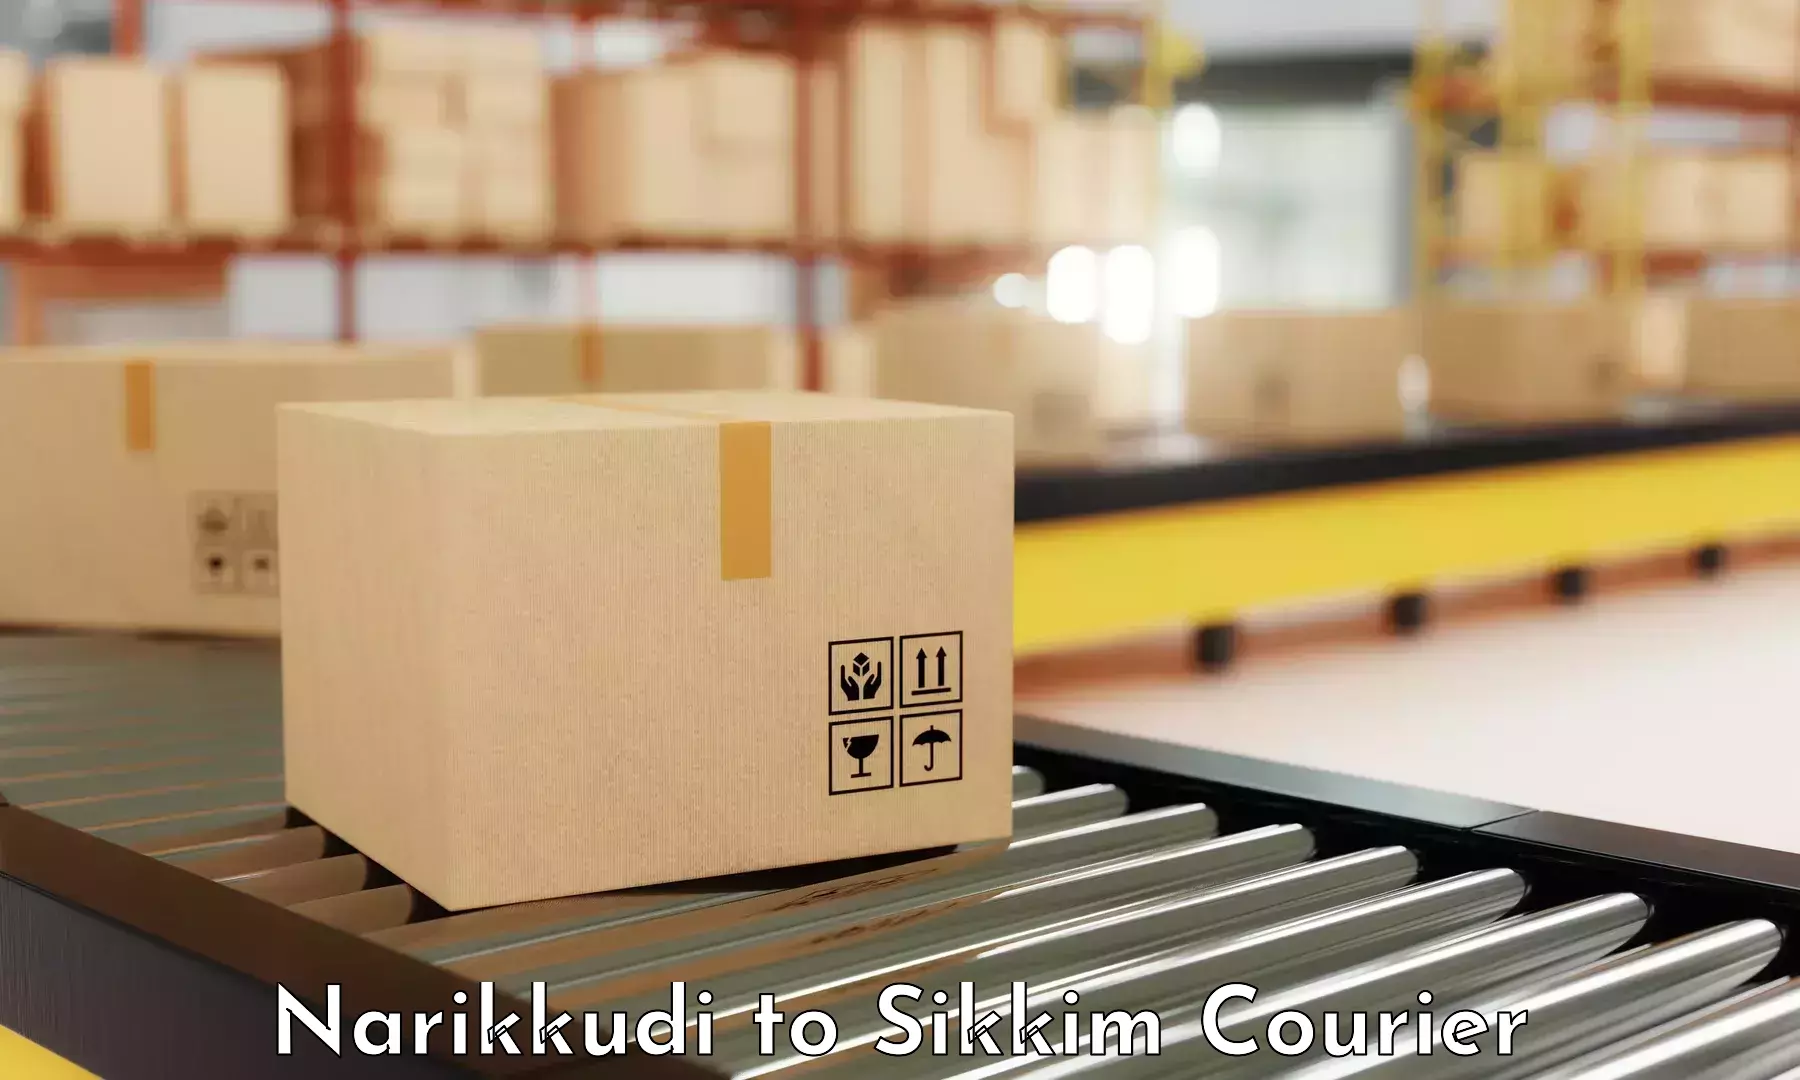 Sustainable shipping practices Narikkudi to Mangan